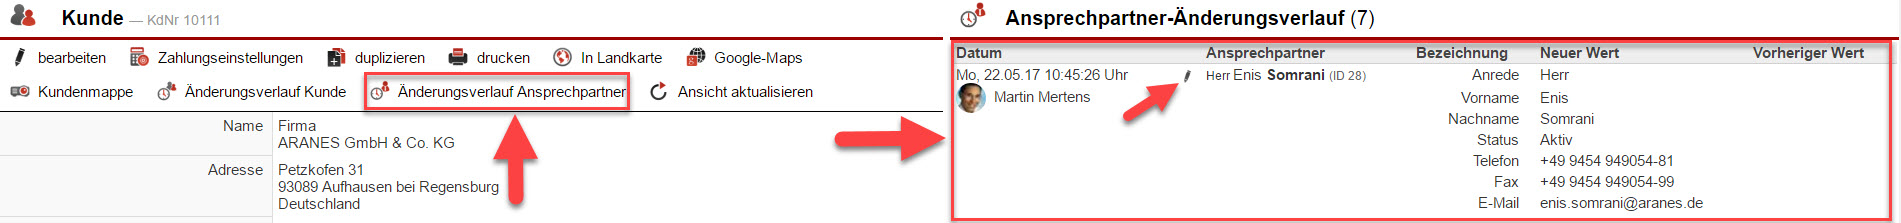 Screenshot Kundenstammdatenmaske mit Markierung auf den Button "Änderungsverlauf Kunde" und dem entsprechenden geöffneten Bereich